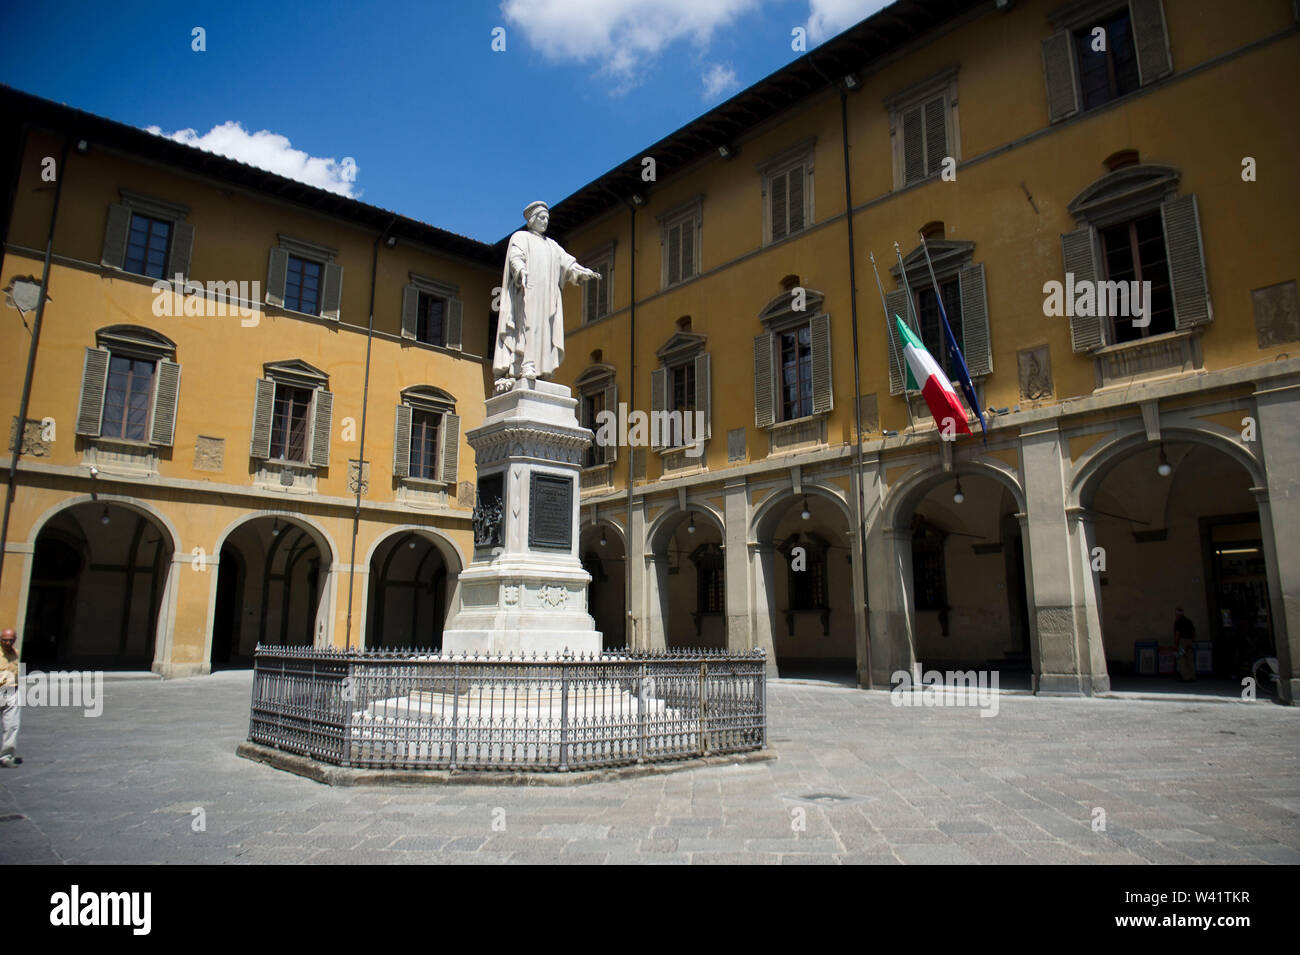 Italy, Tuscany, Prato, monument, Francesco di Marco Datini in Piazza del Comune Stock Photo